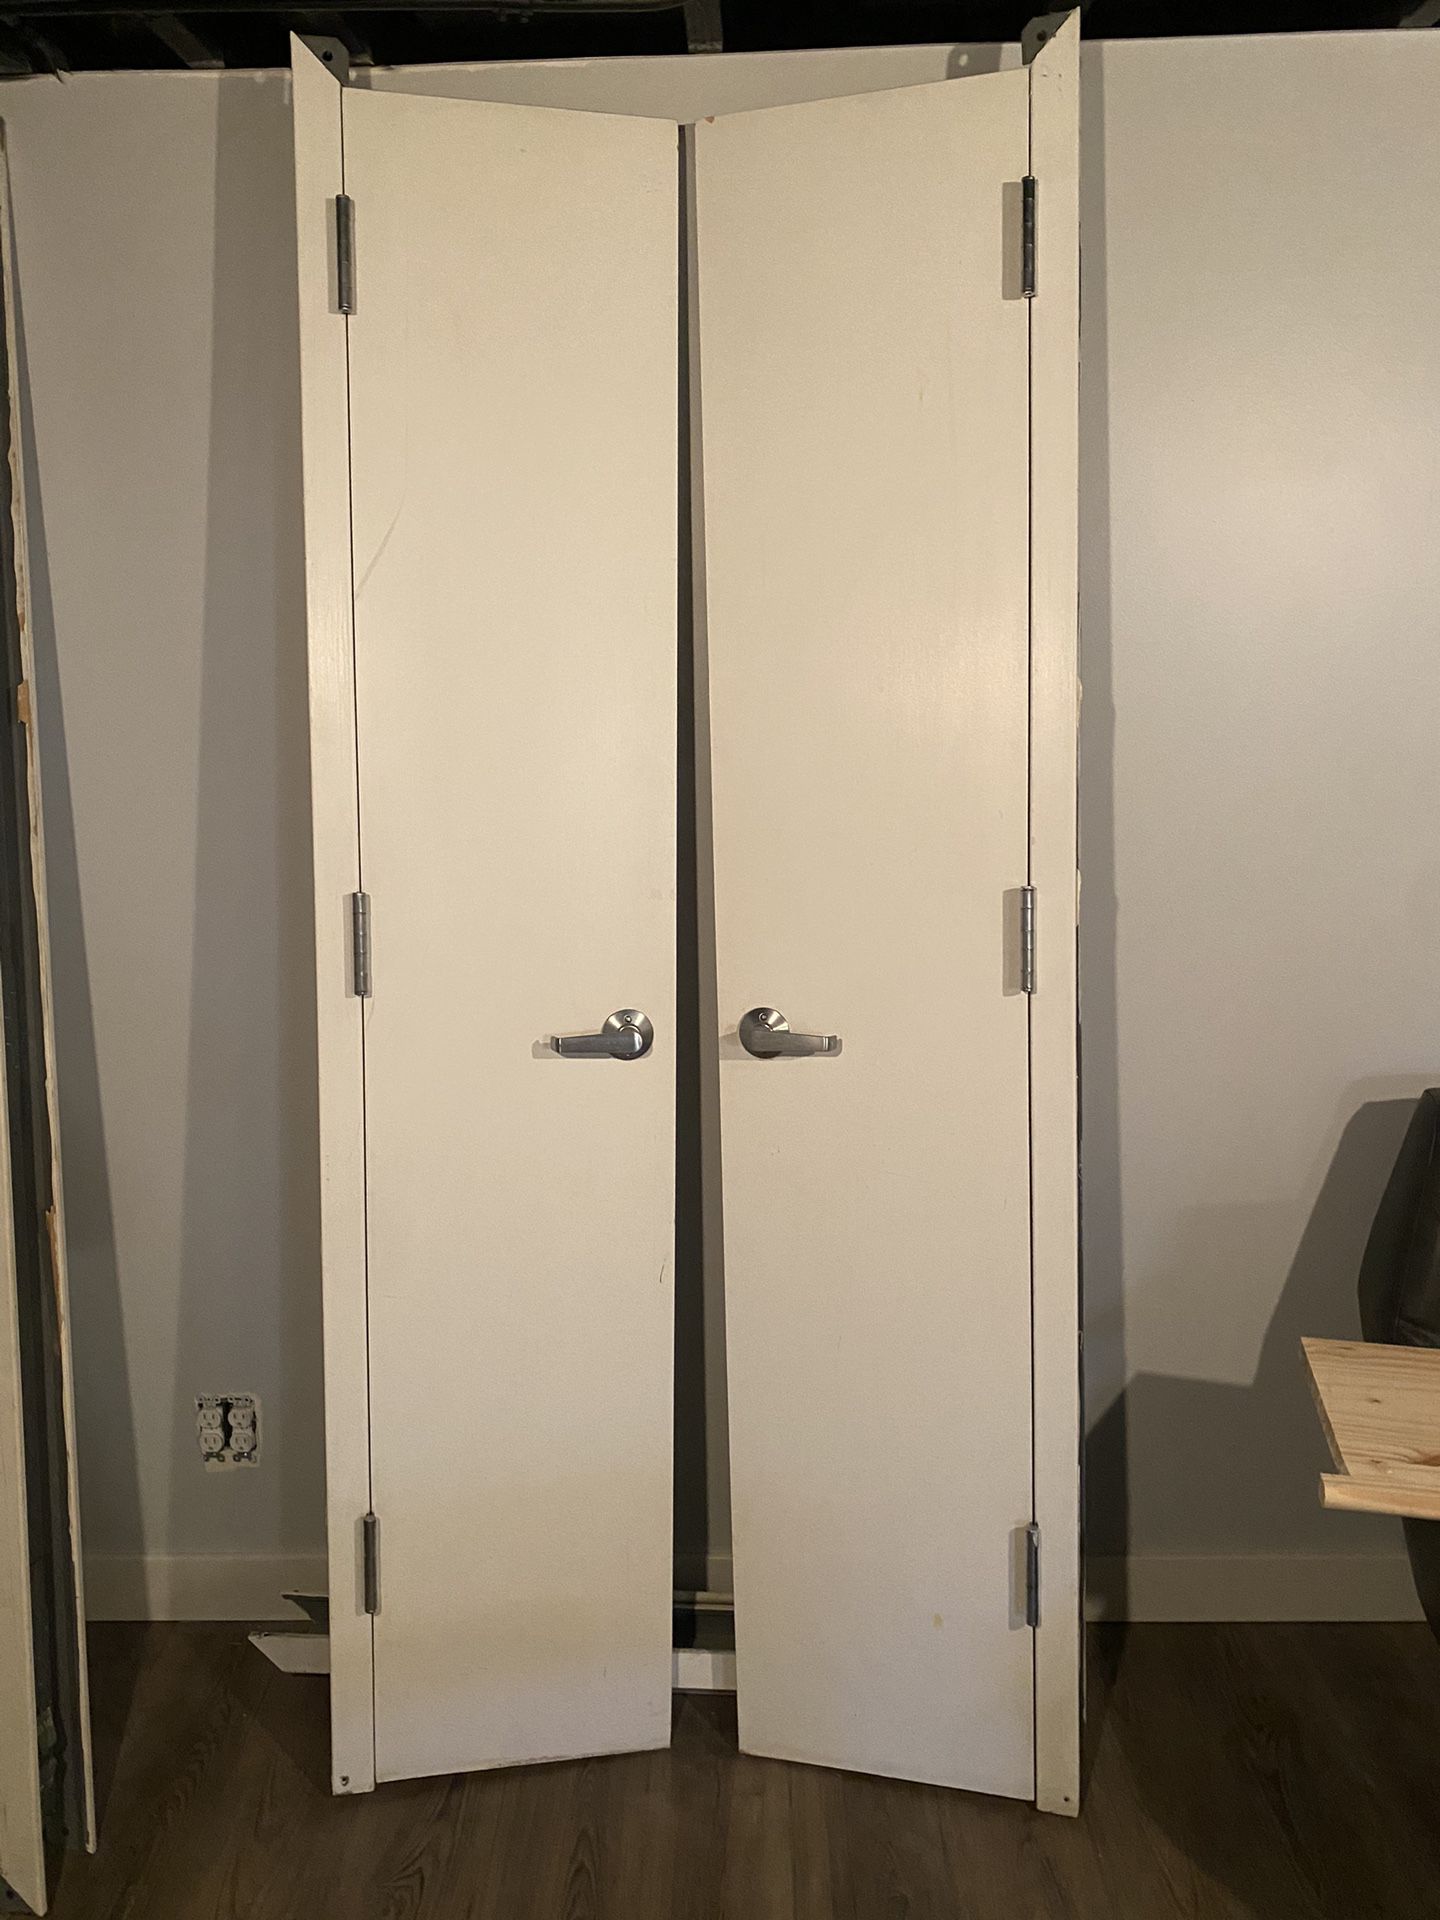 Closet Or Pantry Doors